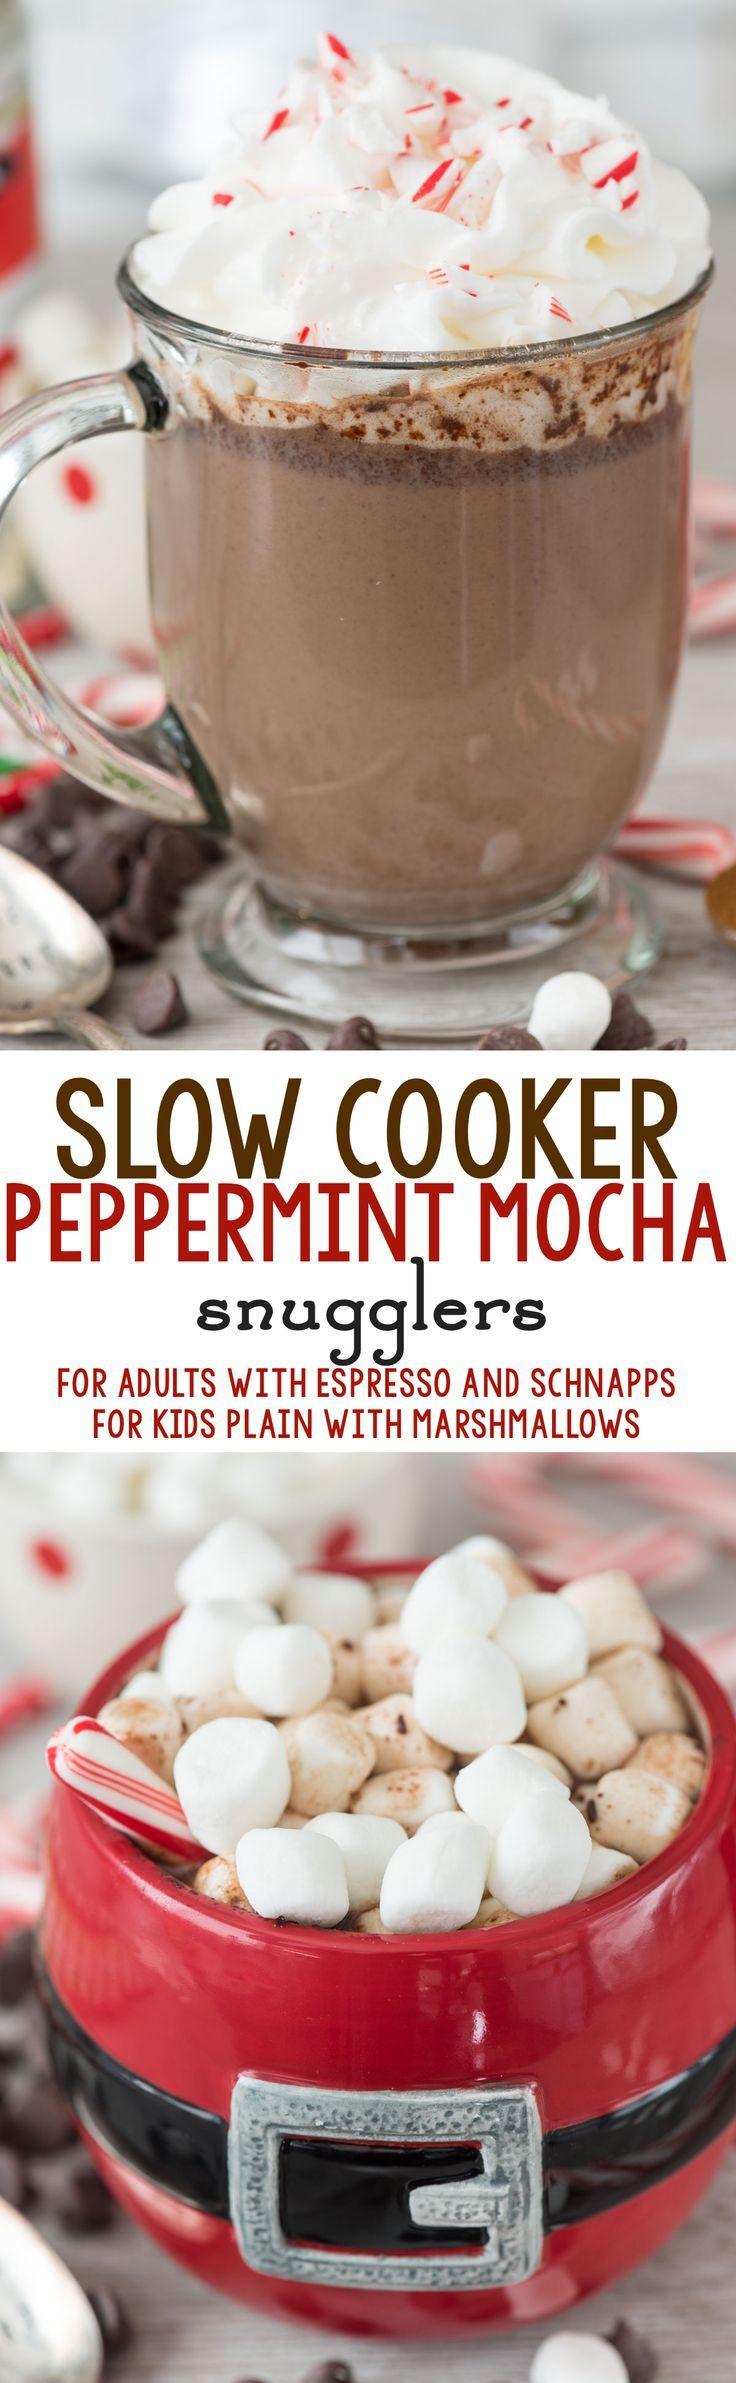 Свадьба - Slow Cooker Peppermint Mocha Snugglers